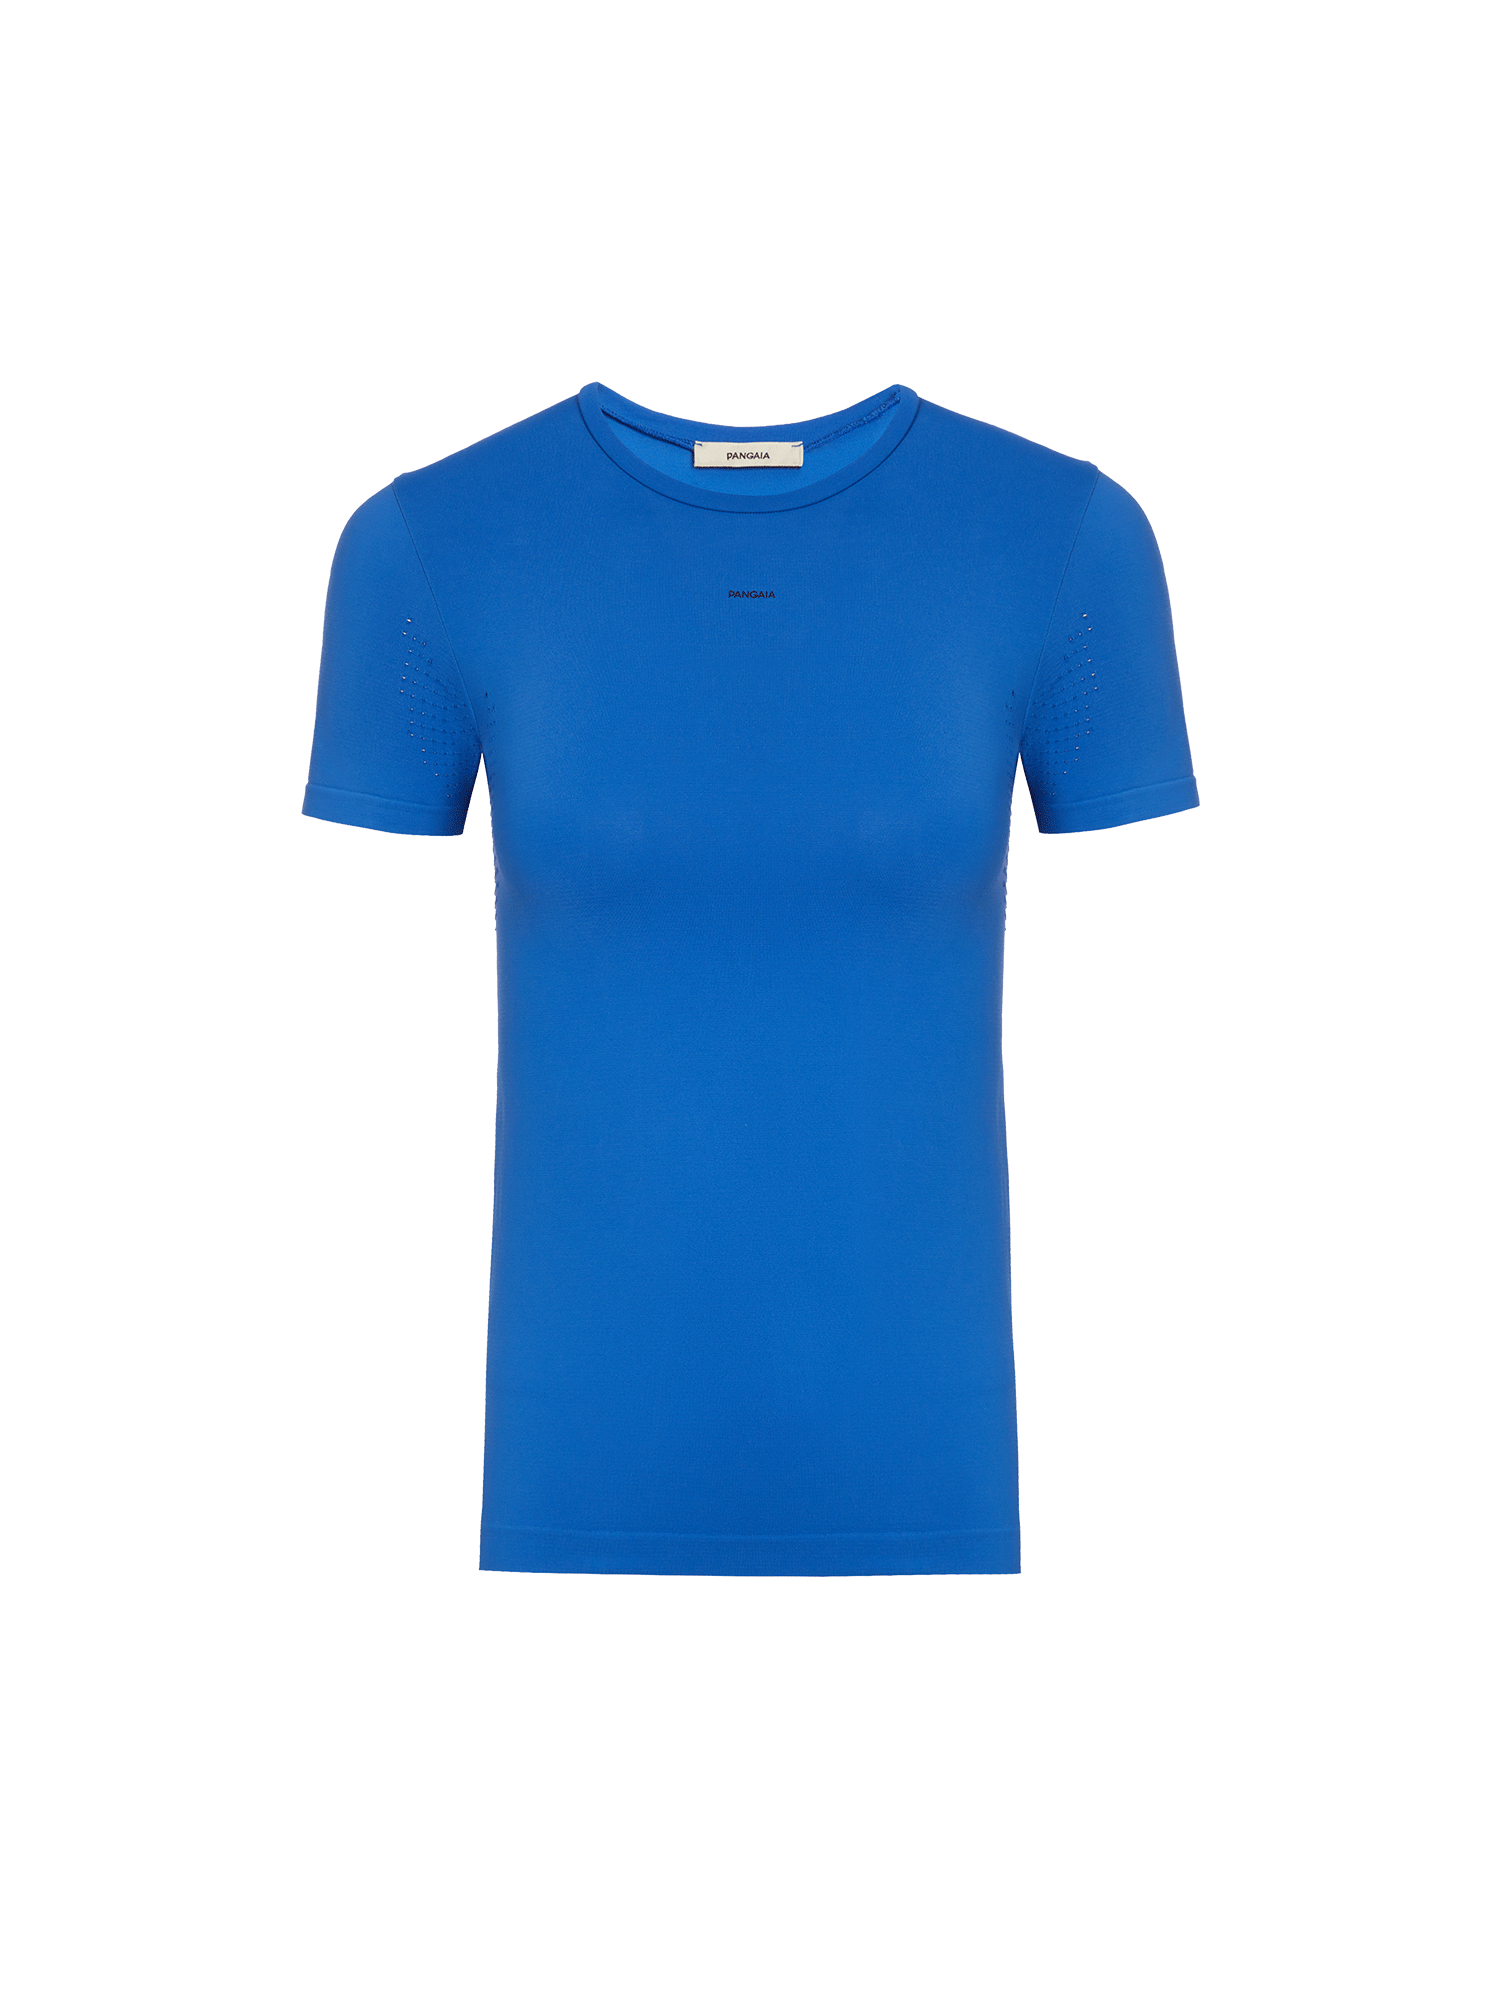 Activewear-3.1-Seamless-T-Shirt-Cobalt-Blue-packshot-3